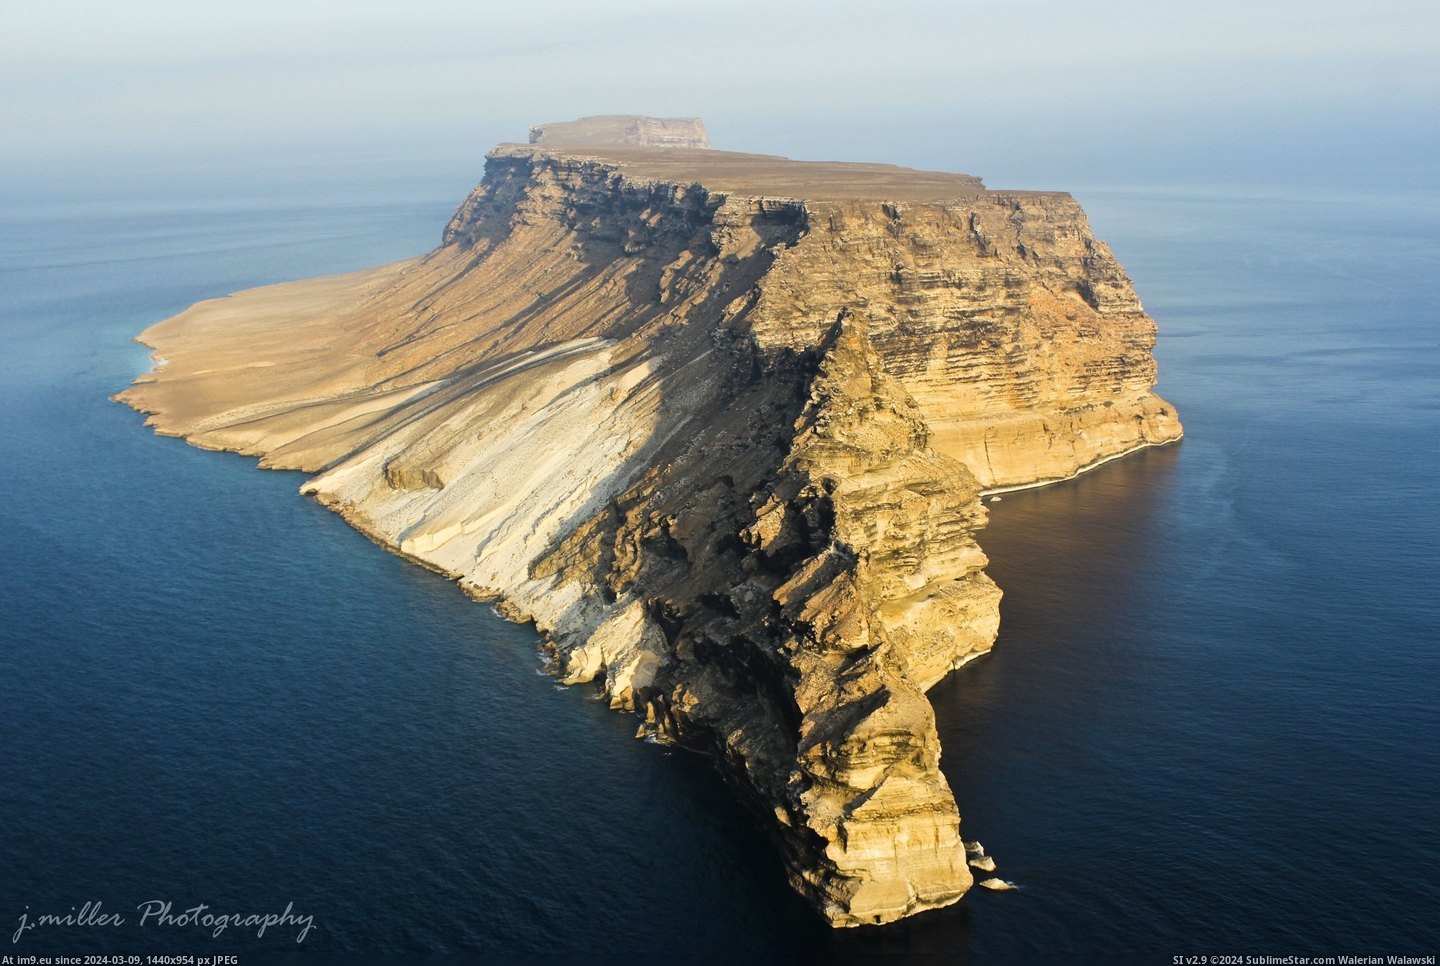 #Island #Public #Yemen #Darsa #Aerial #Photograph [Earthporn] Darsa Island, Yemen. Only known public aerial photograph of this island. [OC][2,073 × 3,110] Pic. (Bild von album My r/EARTHPORN favs))